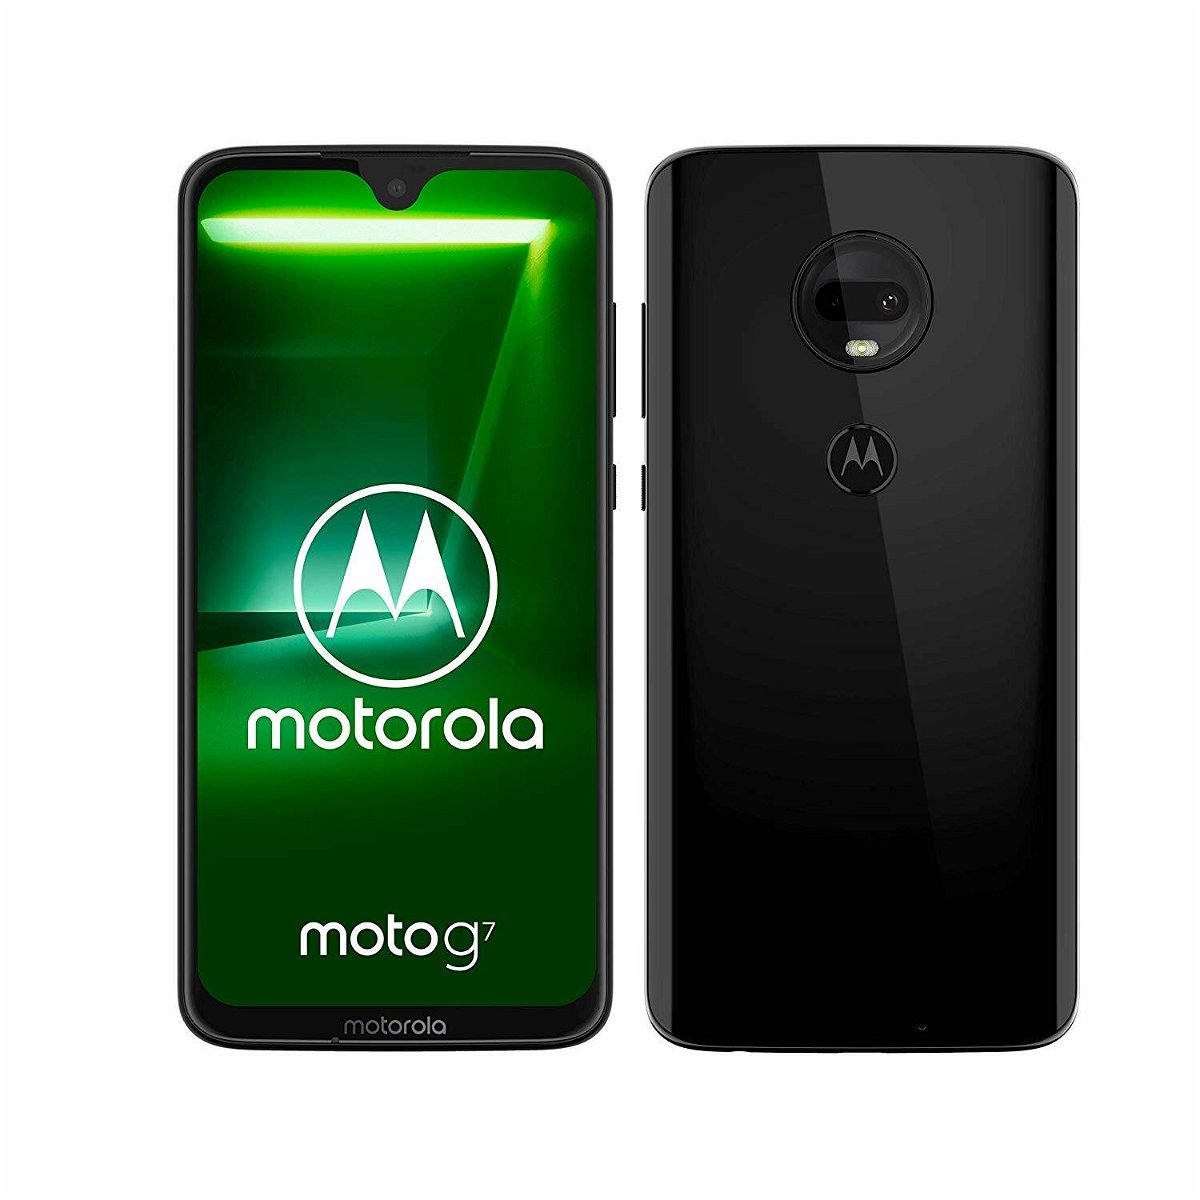 Immagine stampa del Motorola Moto G7